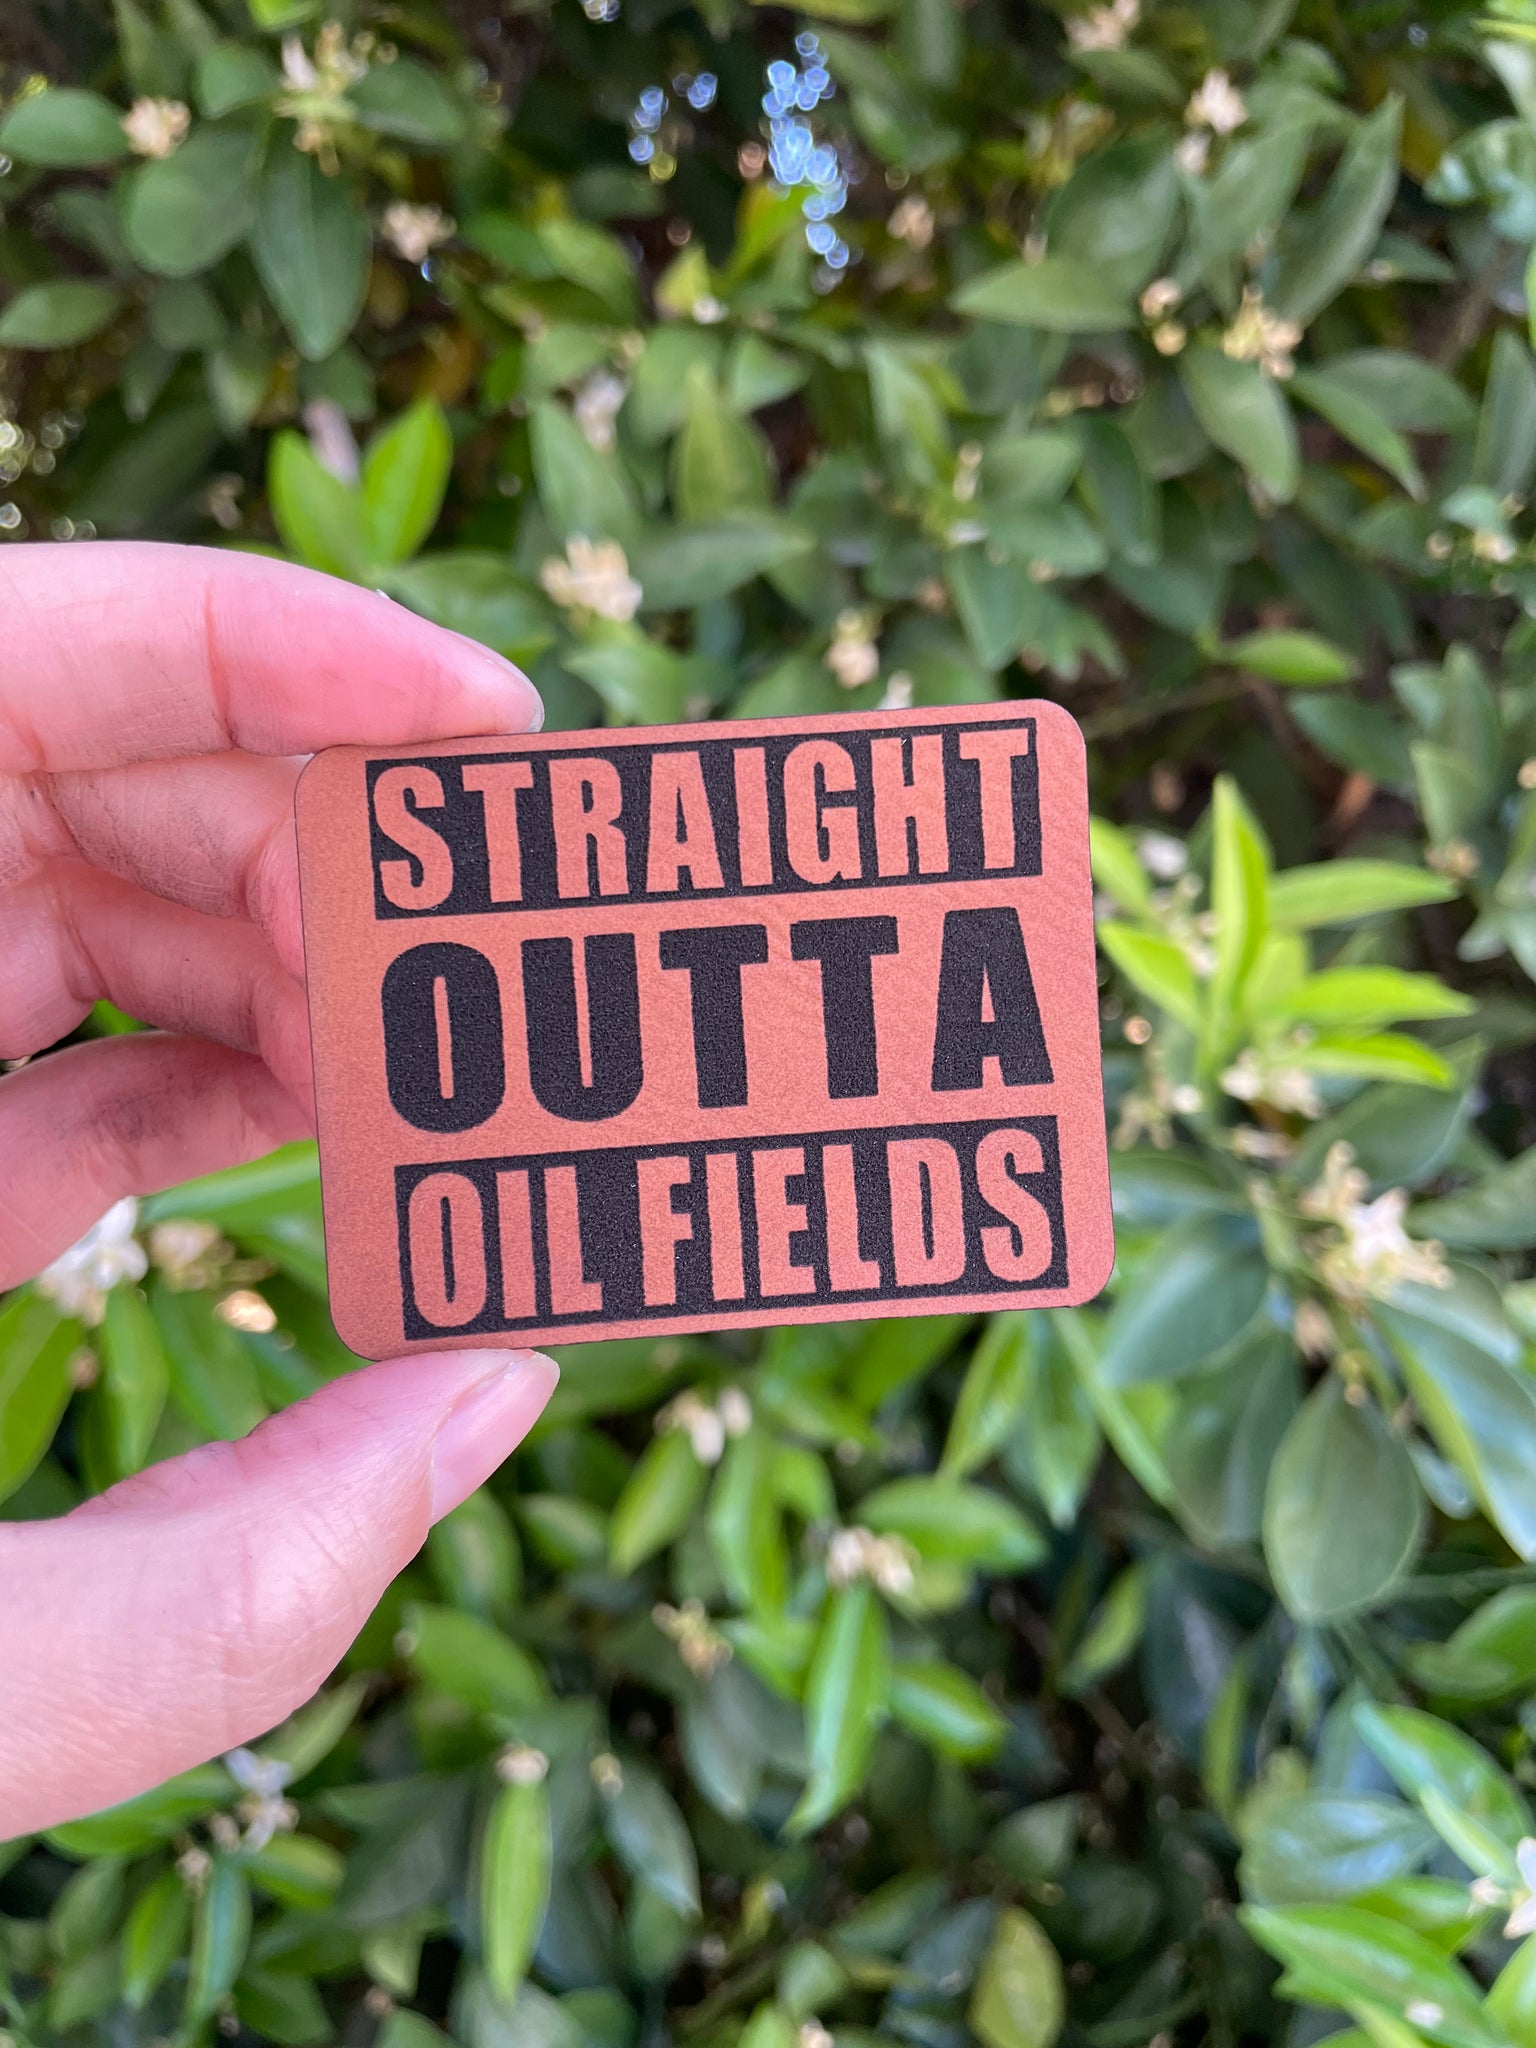 Straight outta oil fields